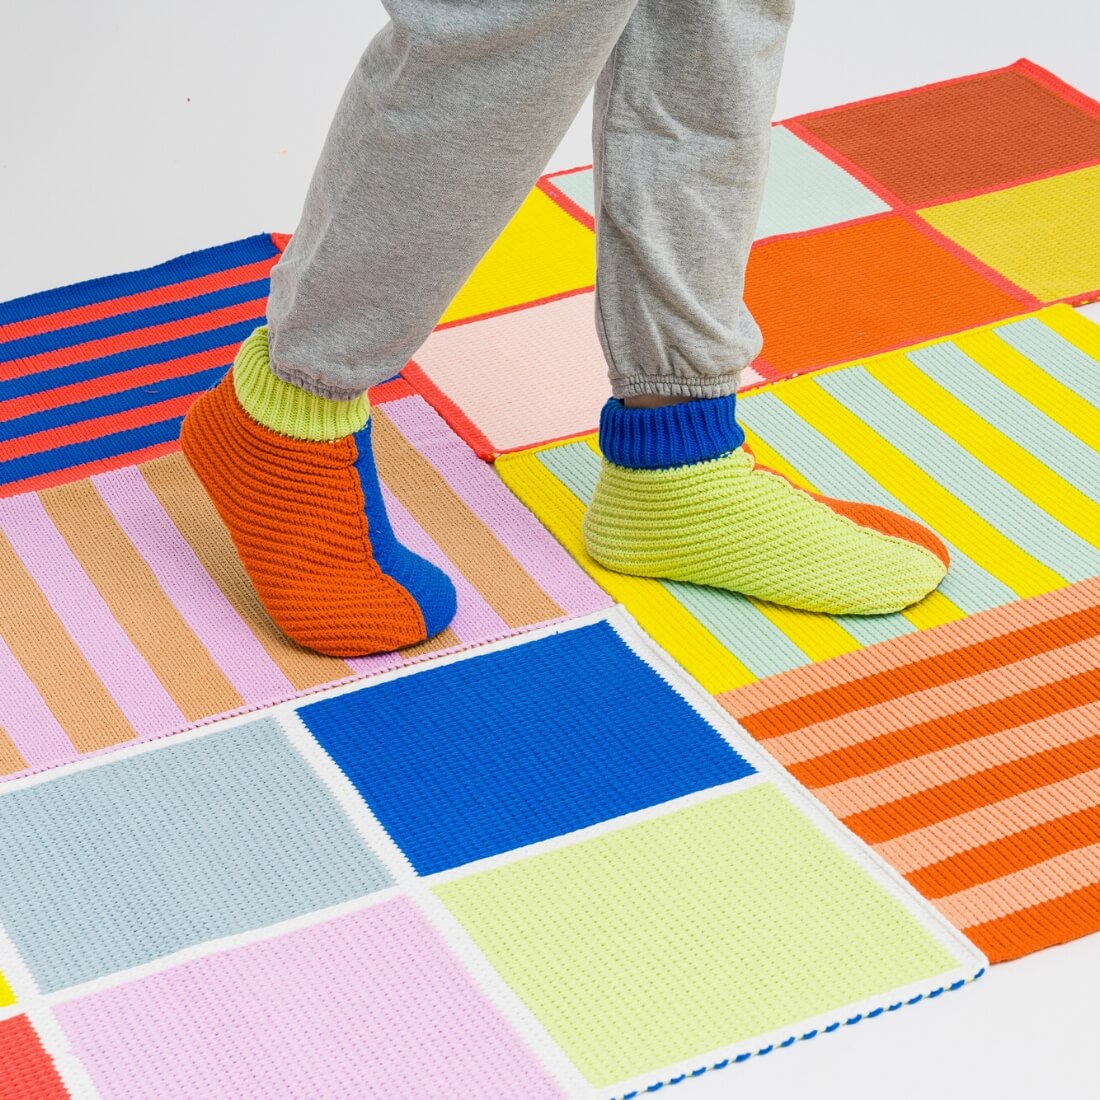 Verloop colorful mini rugs 